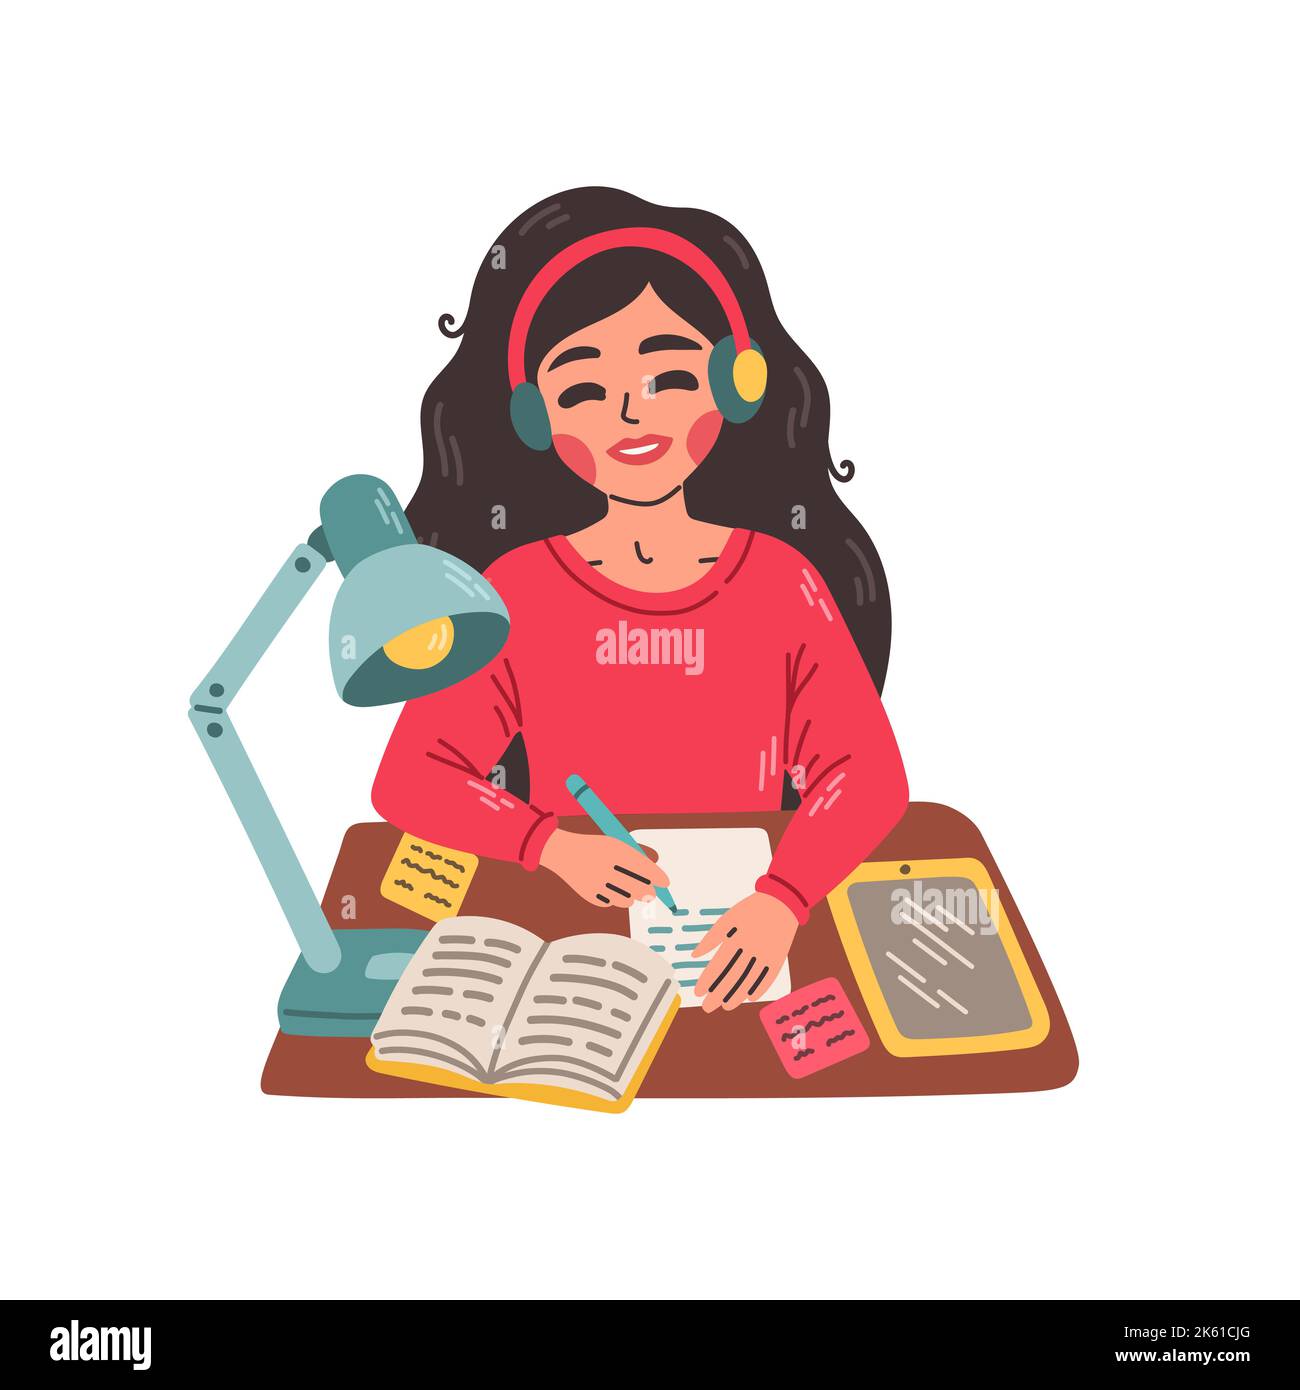 Junges Mädchen, das an einem Tisch sitzt und im Notizbuch schreibt. Flache Darstellung des e-Learning- und Tutorialkonzepts. Stock Vektor